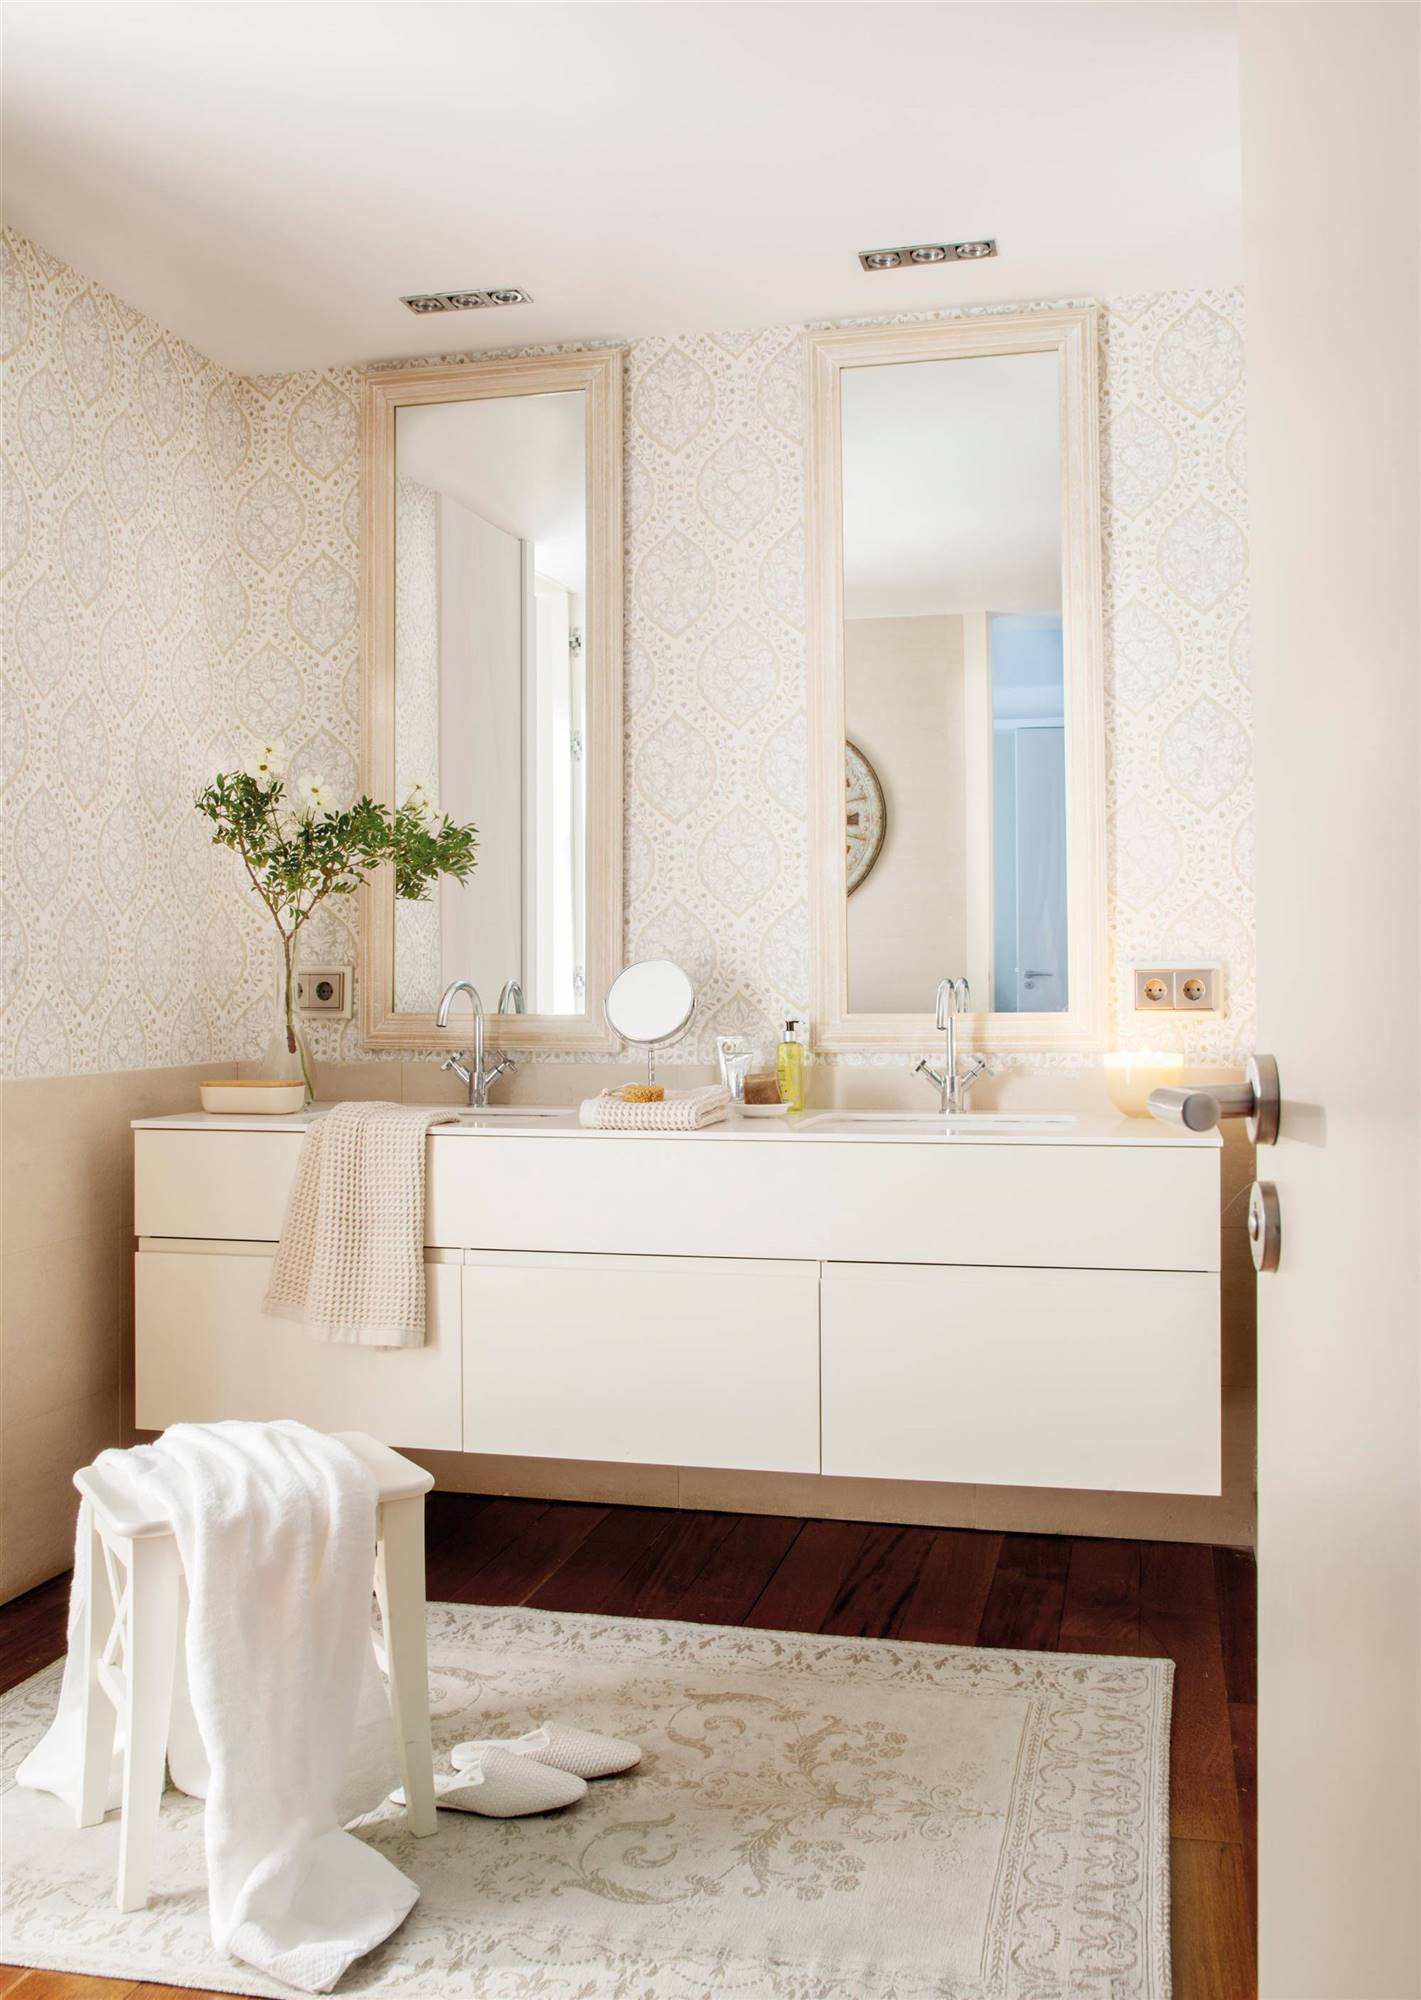 Baño con papel pintado y alfombra estampada de estilo afrancesado.